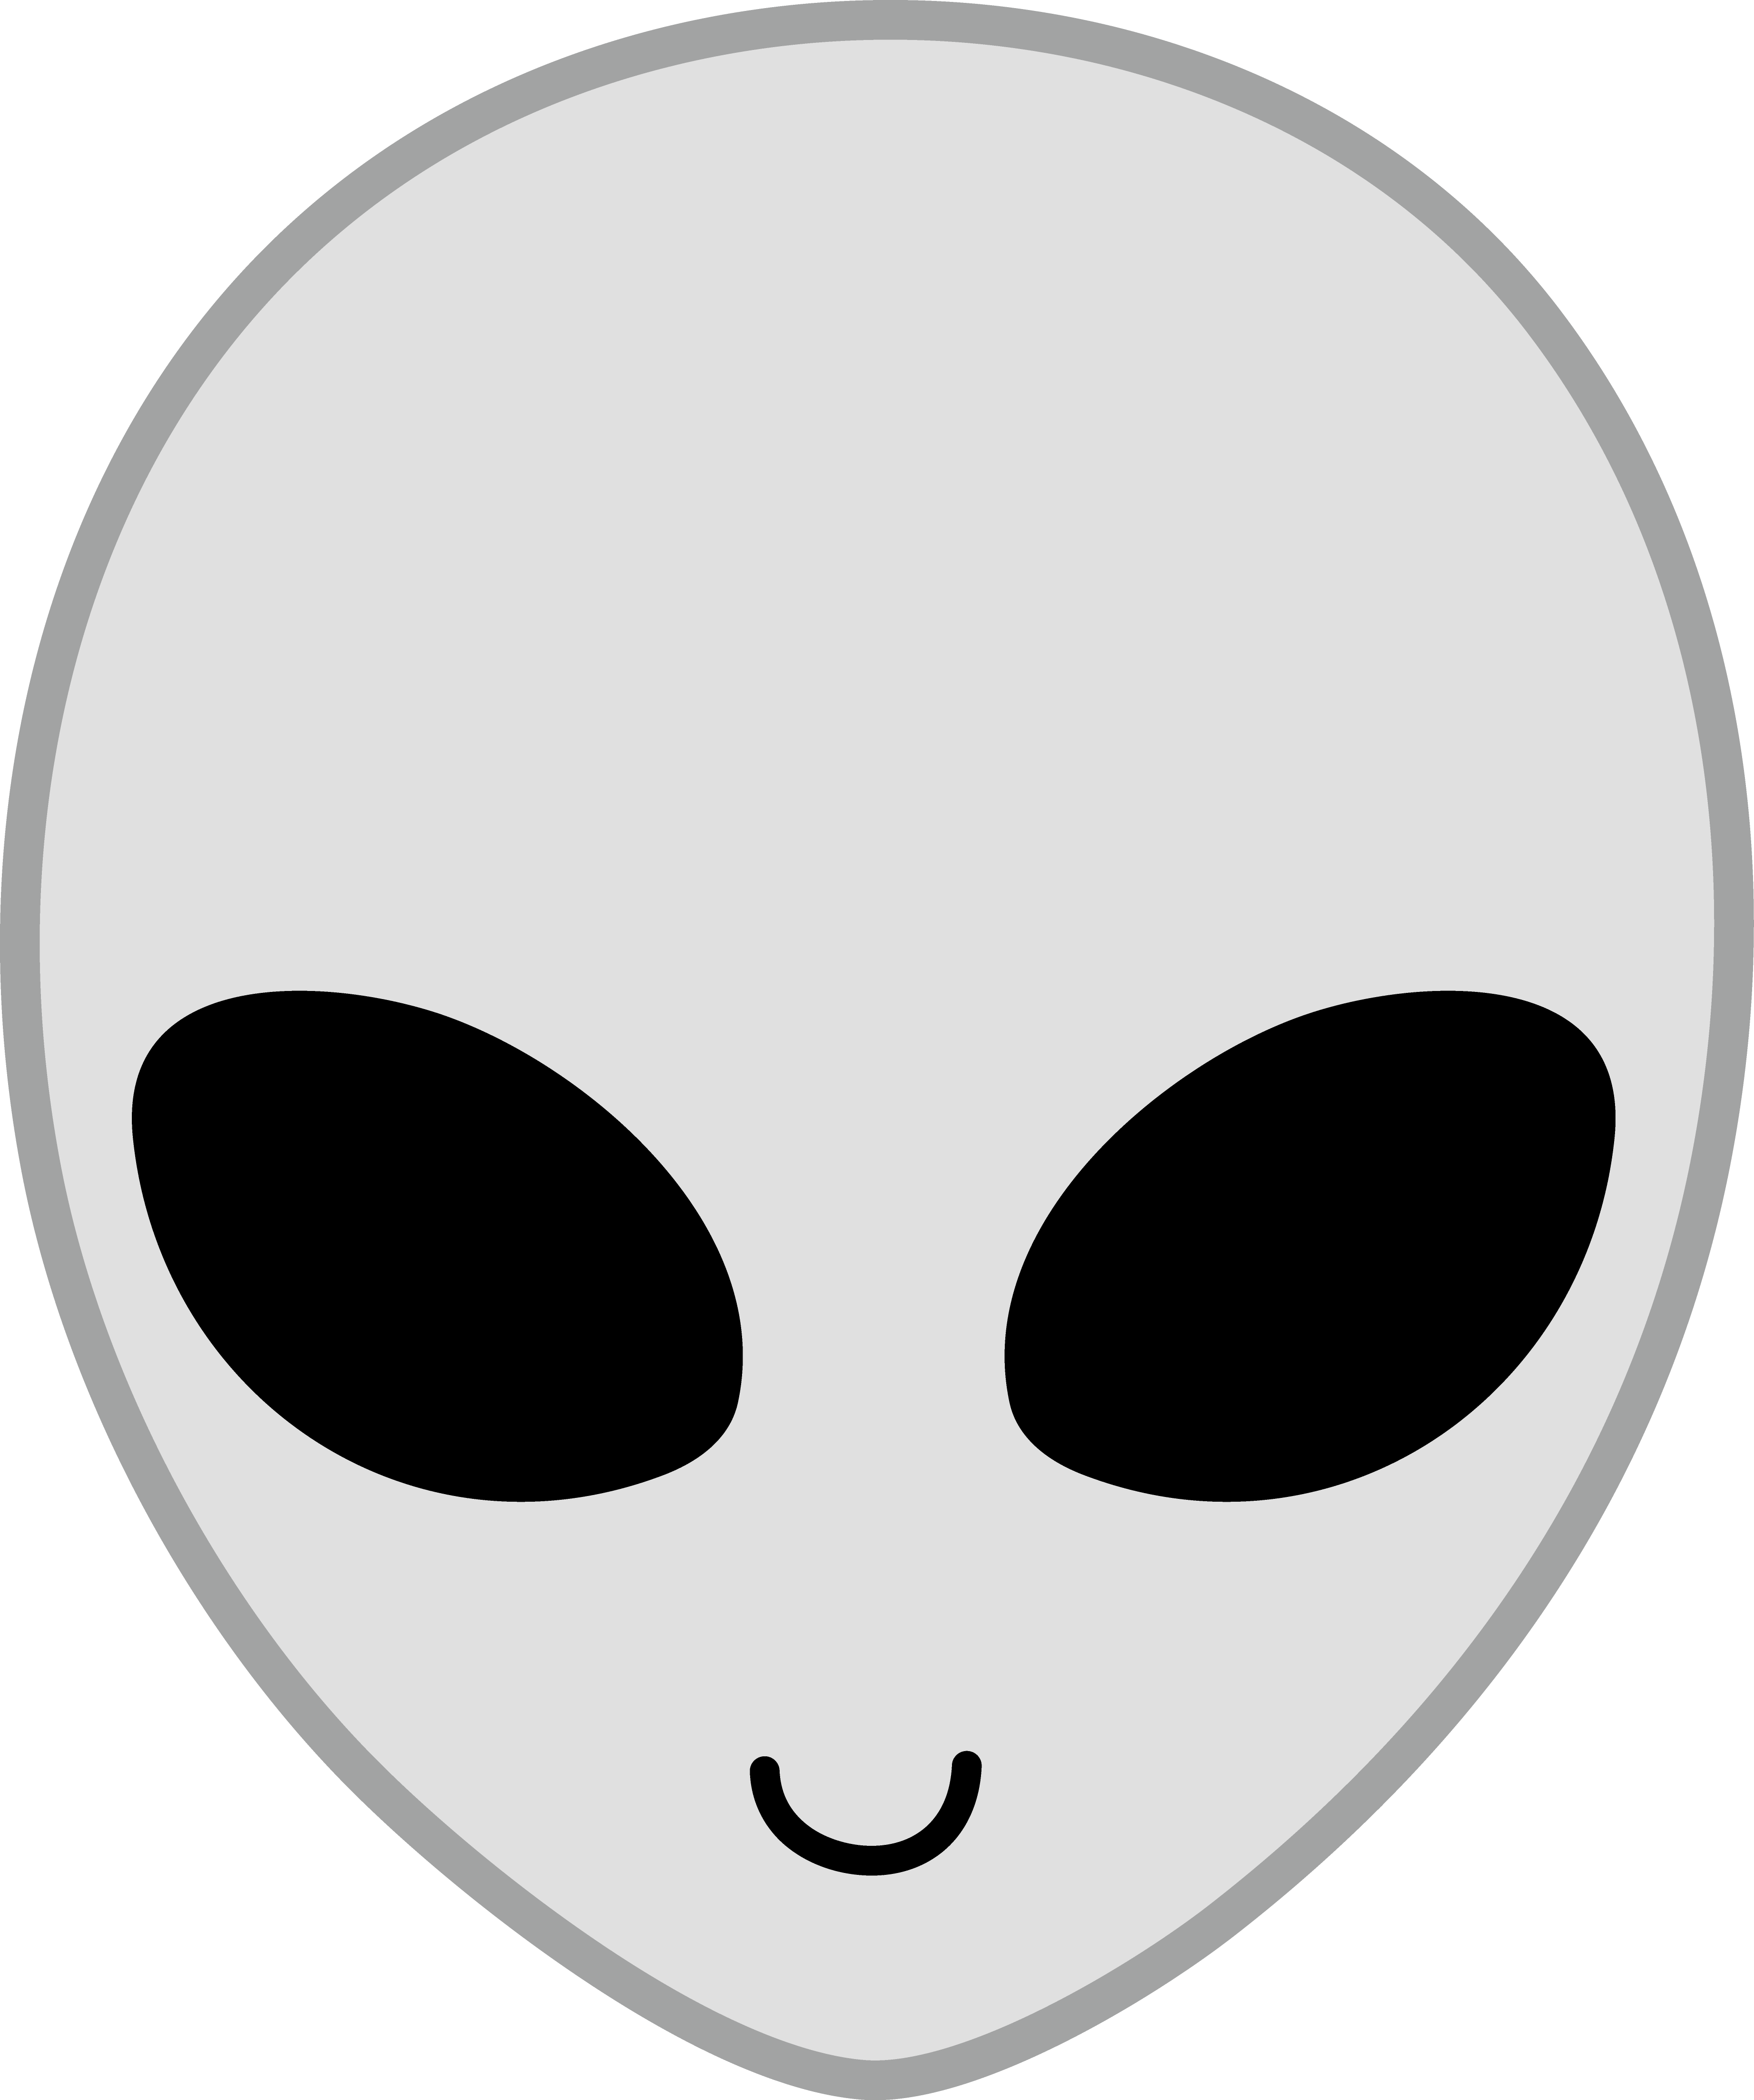 Alien head clip art - ClipartFox